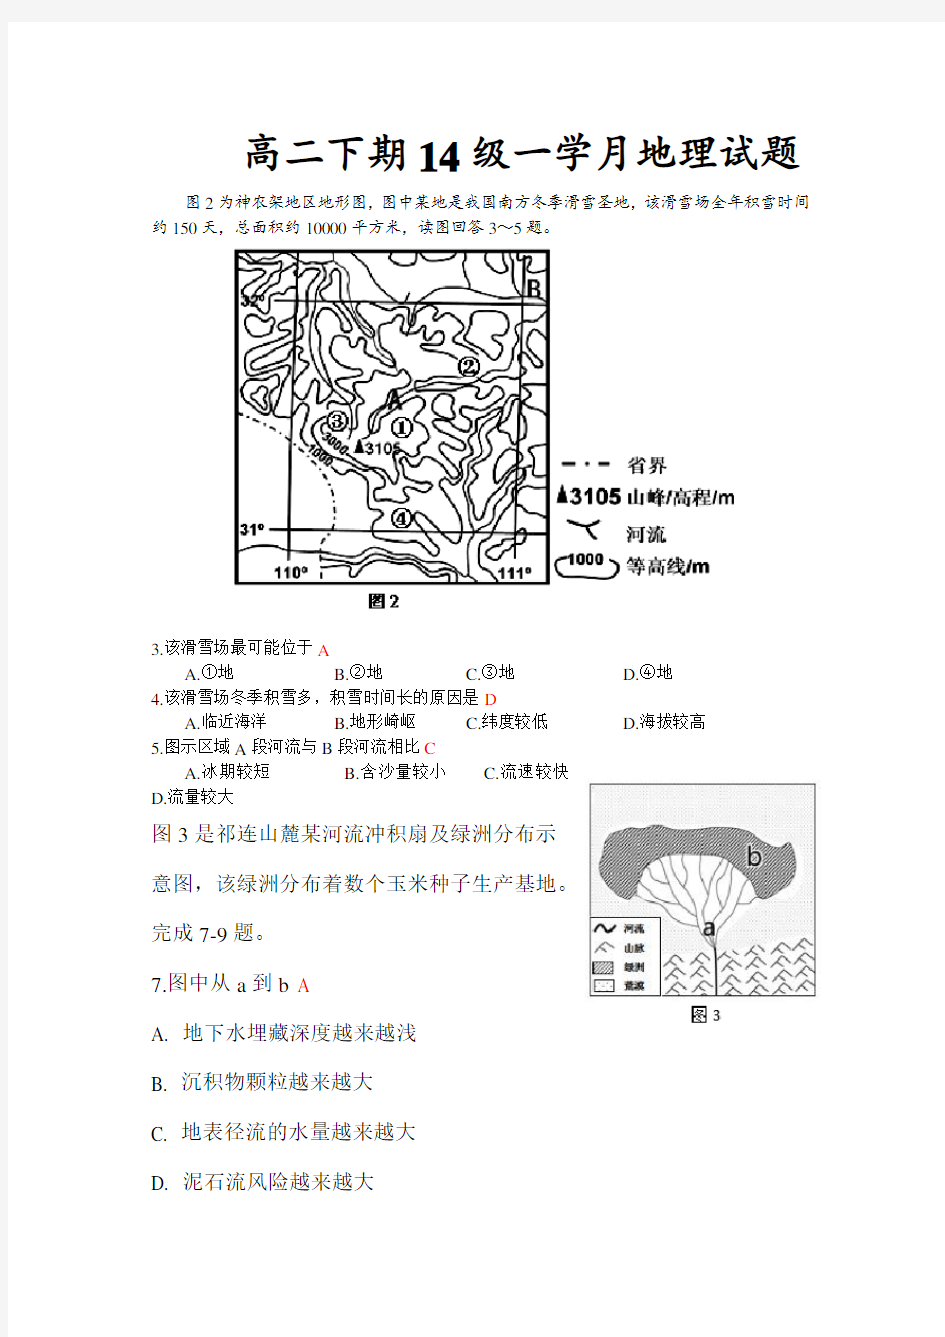 (完整版)中国地理概况练习题(附答案)